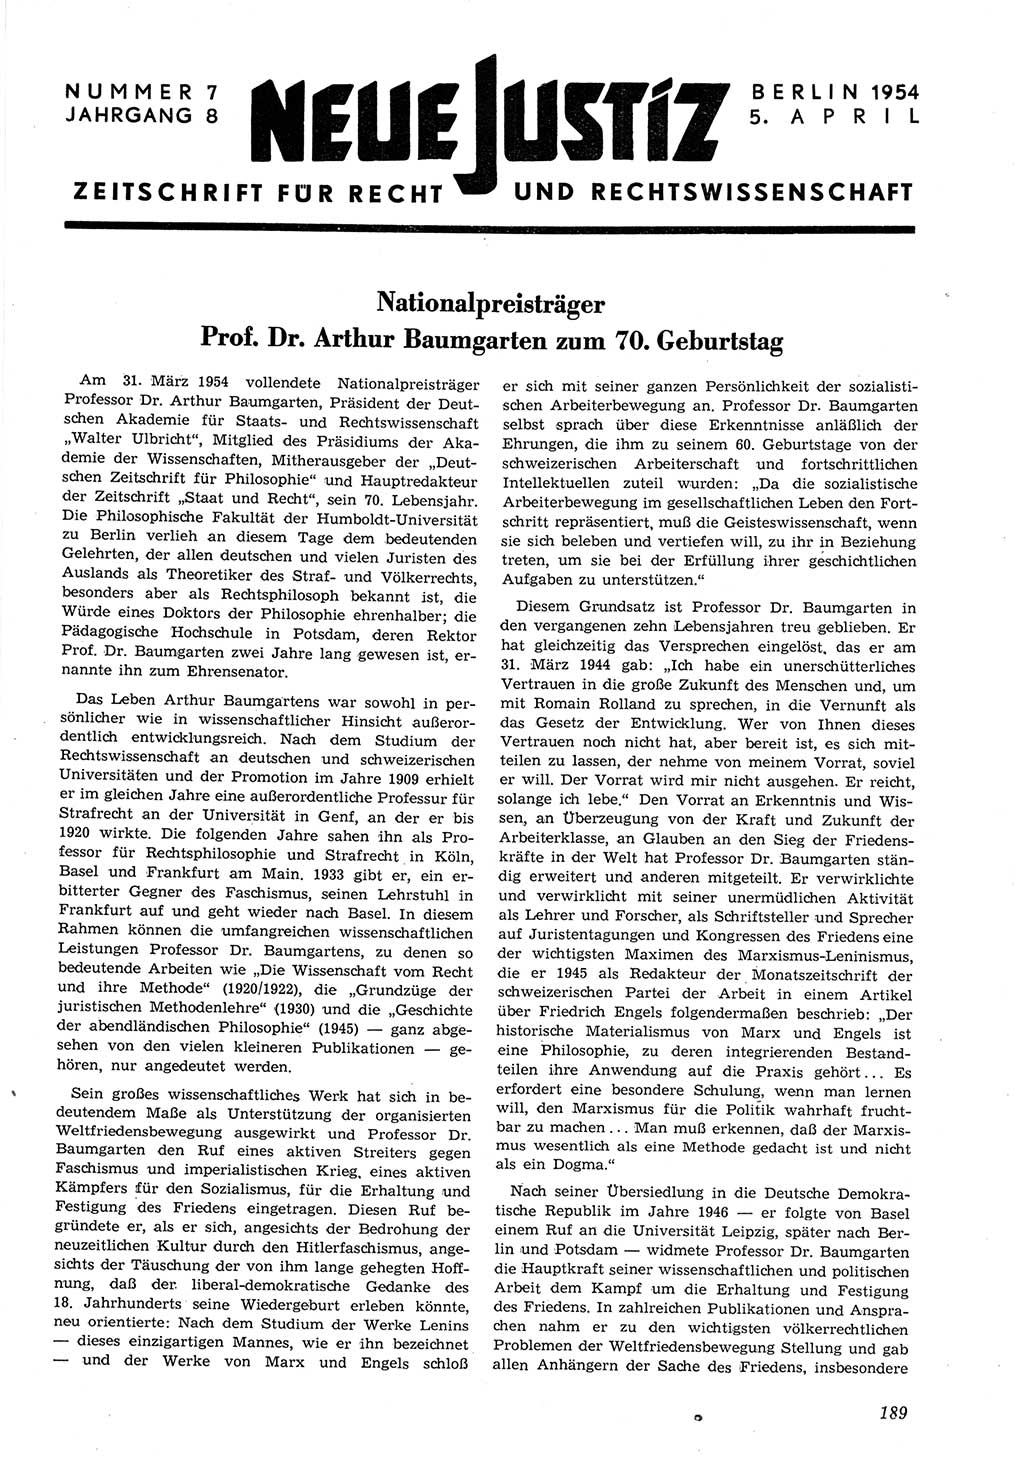 Neue Justiz (NJ), Zeitschrift für Recht und Rechtswissenschaft [Deutsche Demokratische Republik (DDR)], 8. Jahrgang 1954, Seite 189 (NJ DDR 1954, S. 189)